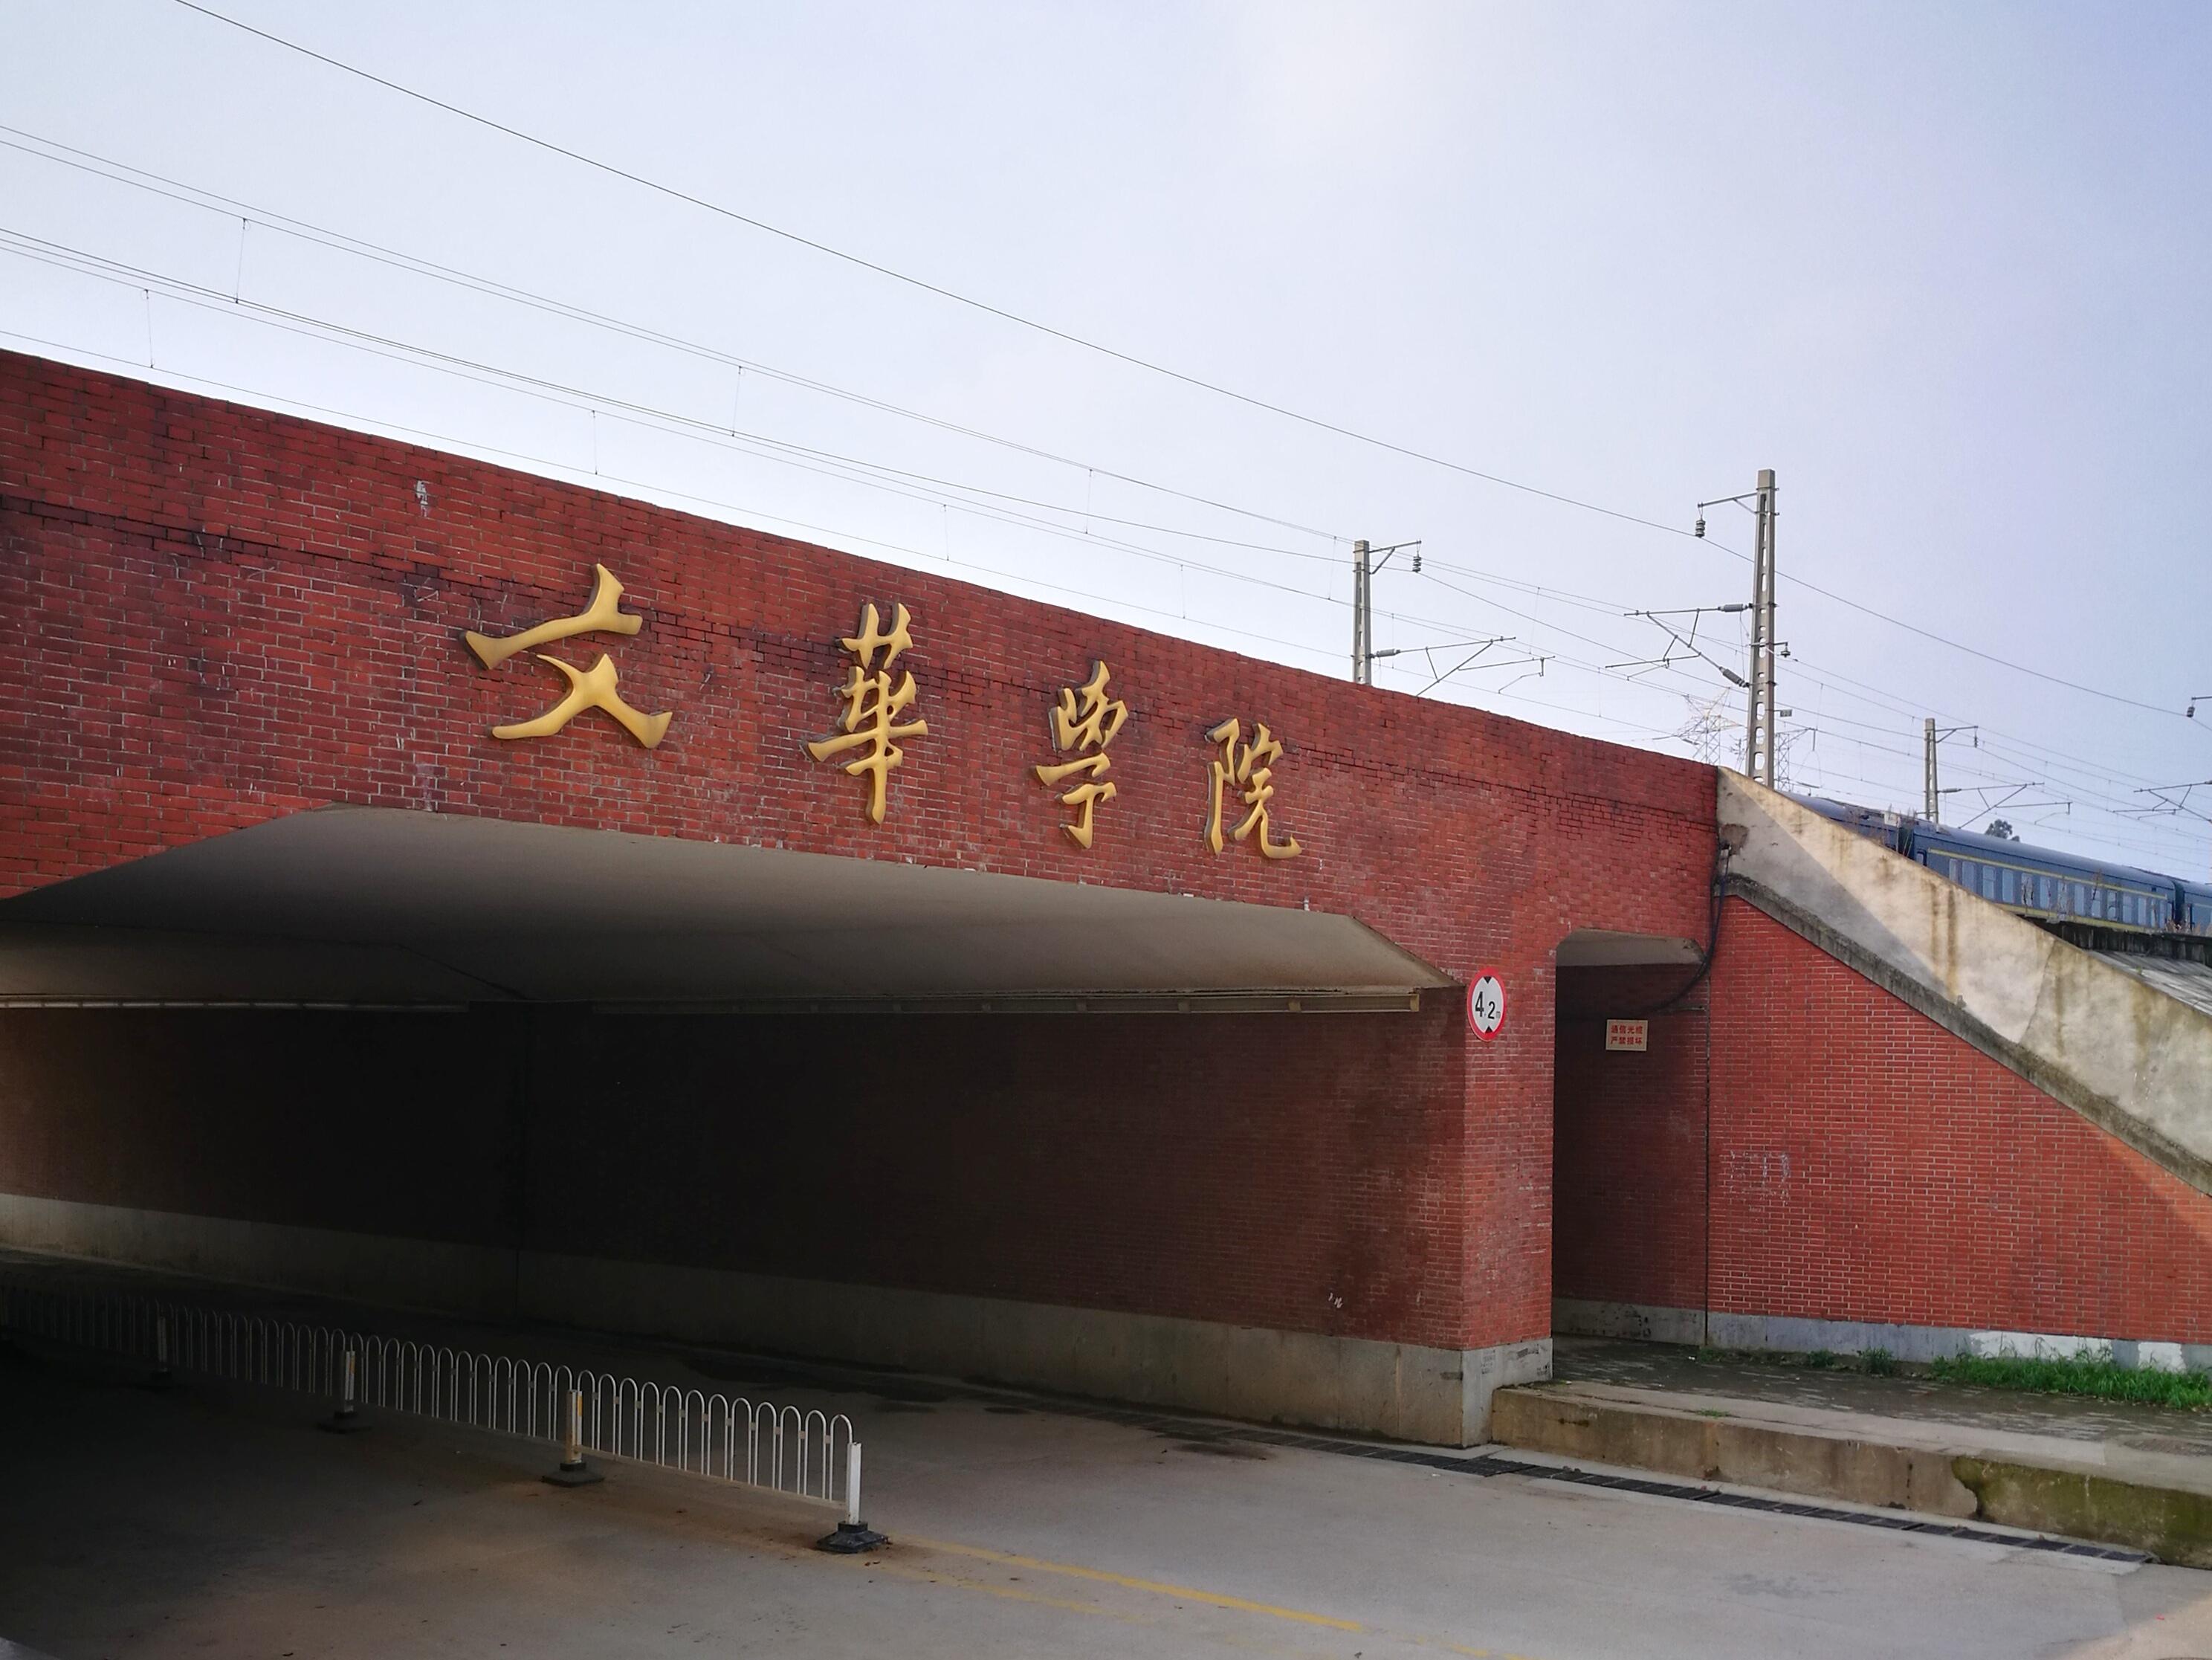 文华学院原本是华中科技大学的一个学院 2003年由武汉美联地产与华中